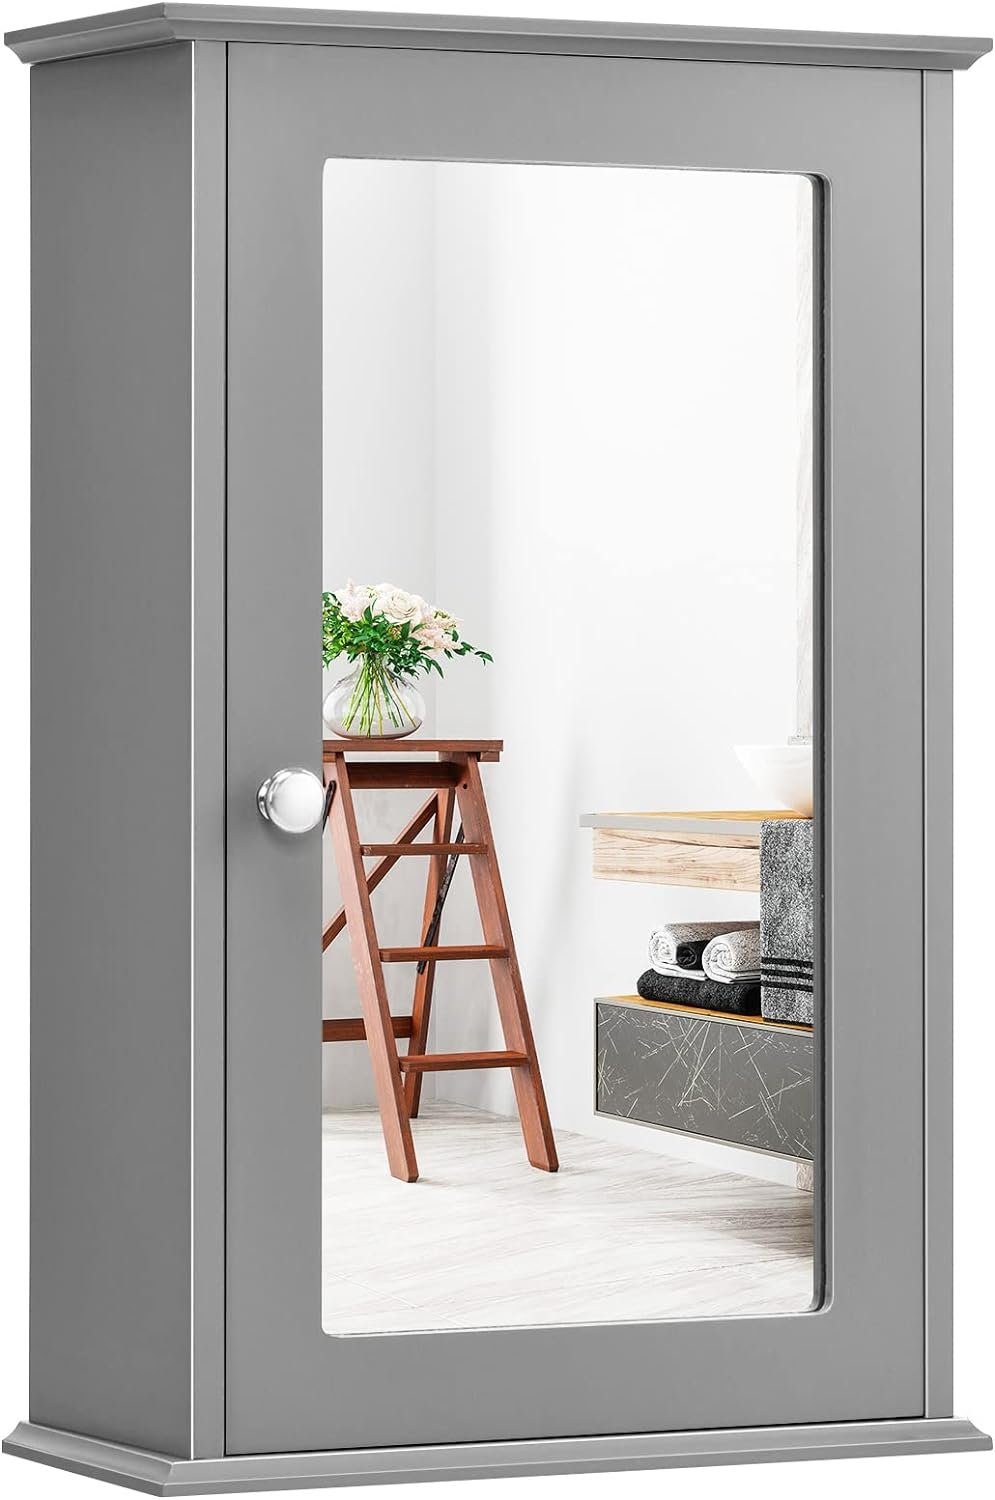 KOMFOTTEU Spiegelschrank mit Verstellbarer Ablage 34 x 15 x 53 cm Grau